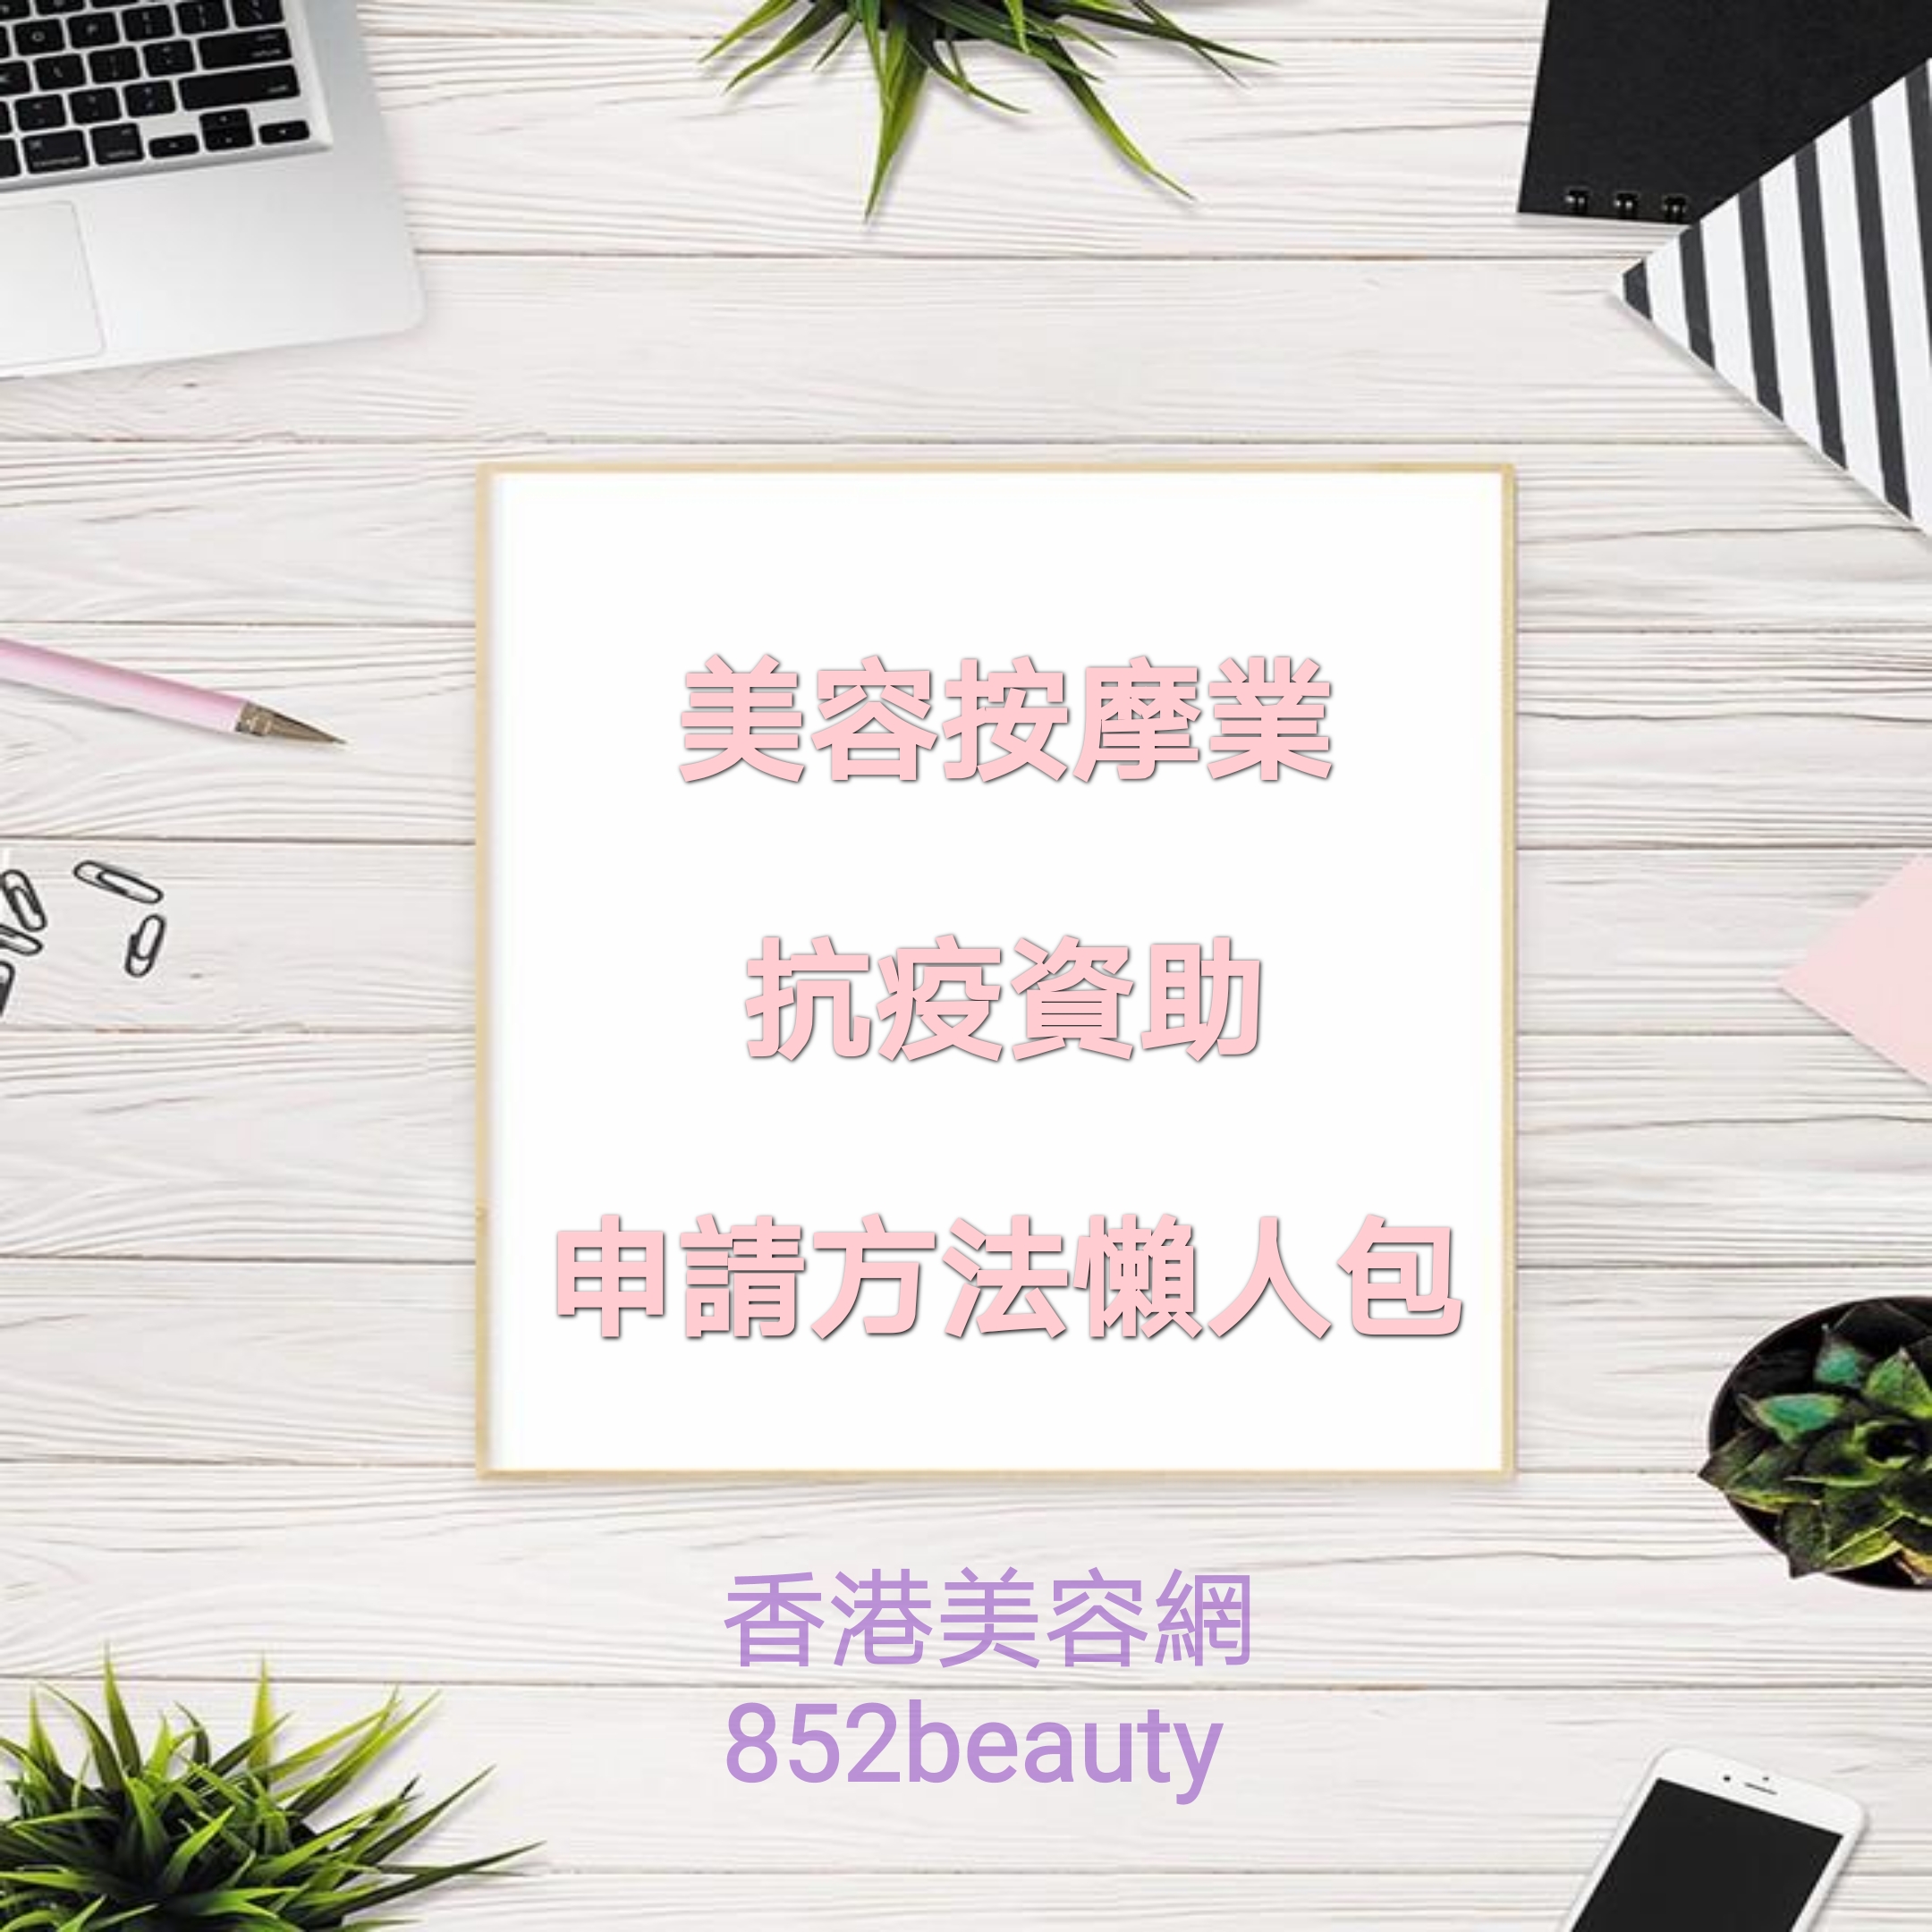 香港美容網 Hong Kong Beauty Salon 最新美容資訊: 【防疫抗疫措施】美容/按摩/美甲業 新一輪資助詳情